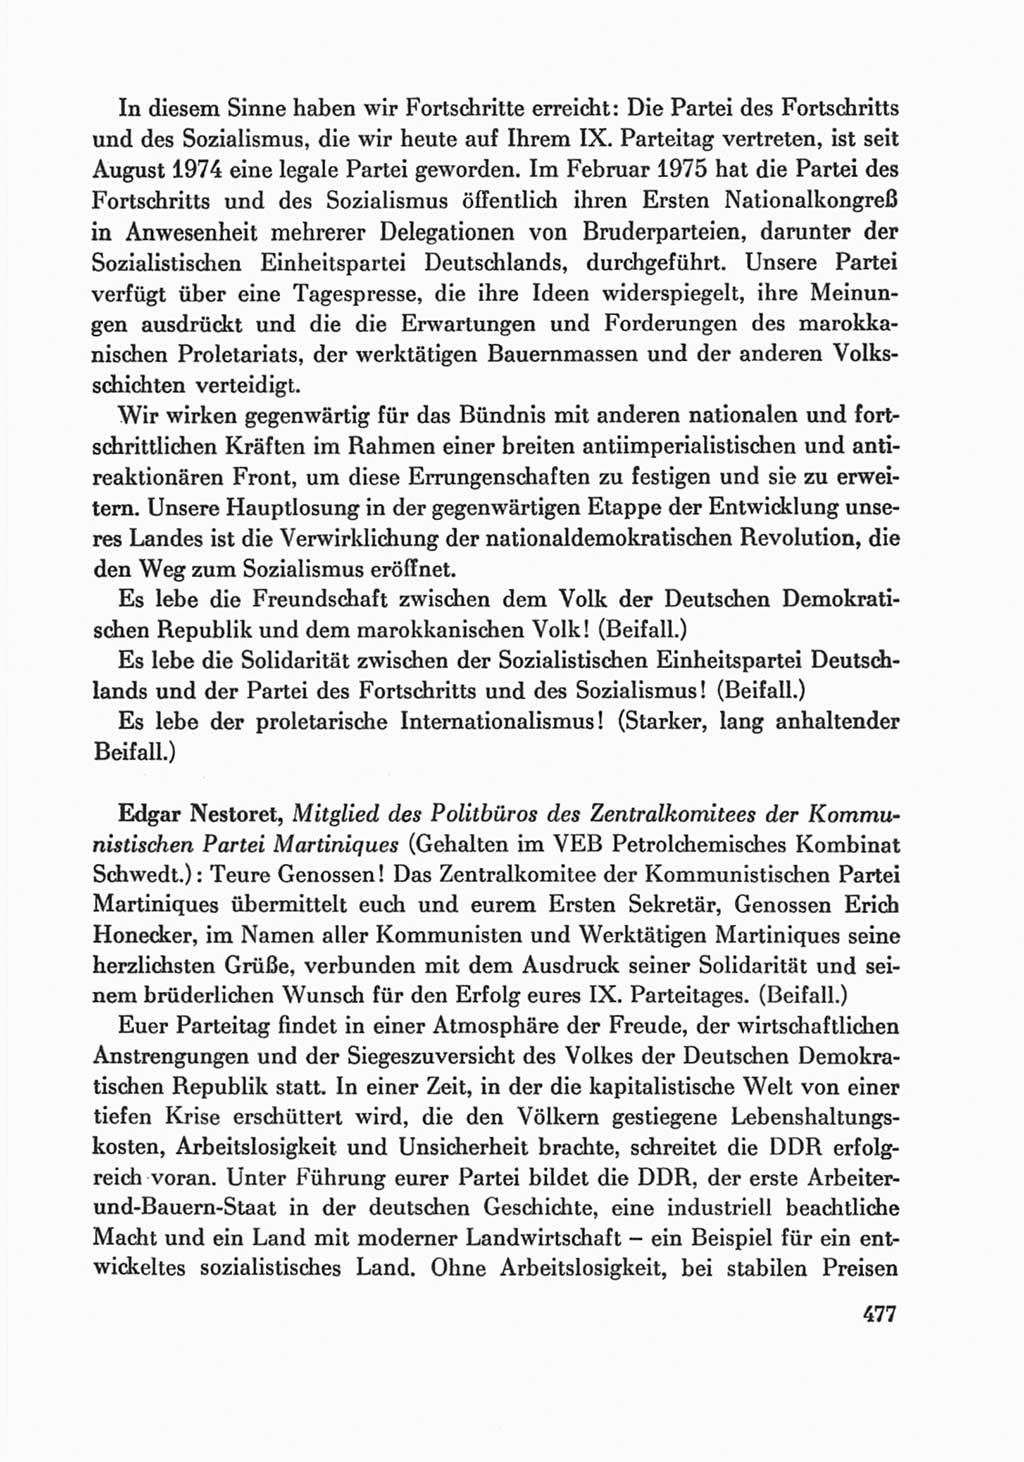 Protokoll der Verhandlungen des Ⅸ. Parteitages der Sozialistischen Einheitspartei Deutschlands (SED) [Deutsche Demokratische Republik (DDR)] 1976, Band 1, Seite 477 (Prot. Verh. Ⅸ. PT SED DDR 1976, Bd. 1, S. 477)